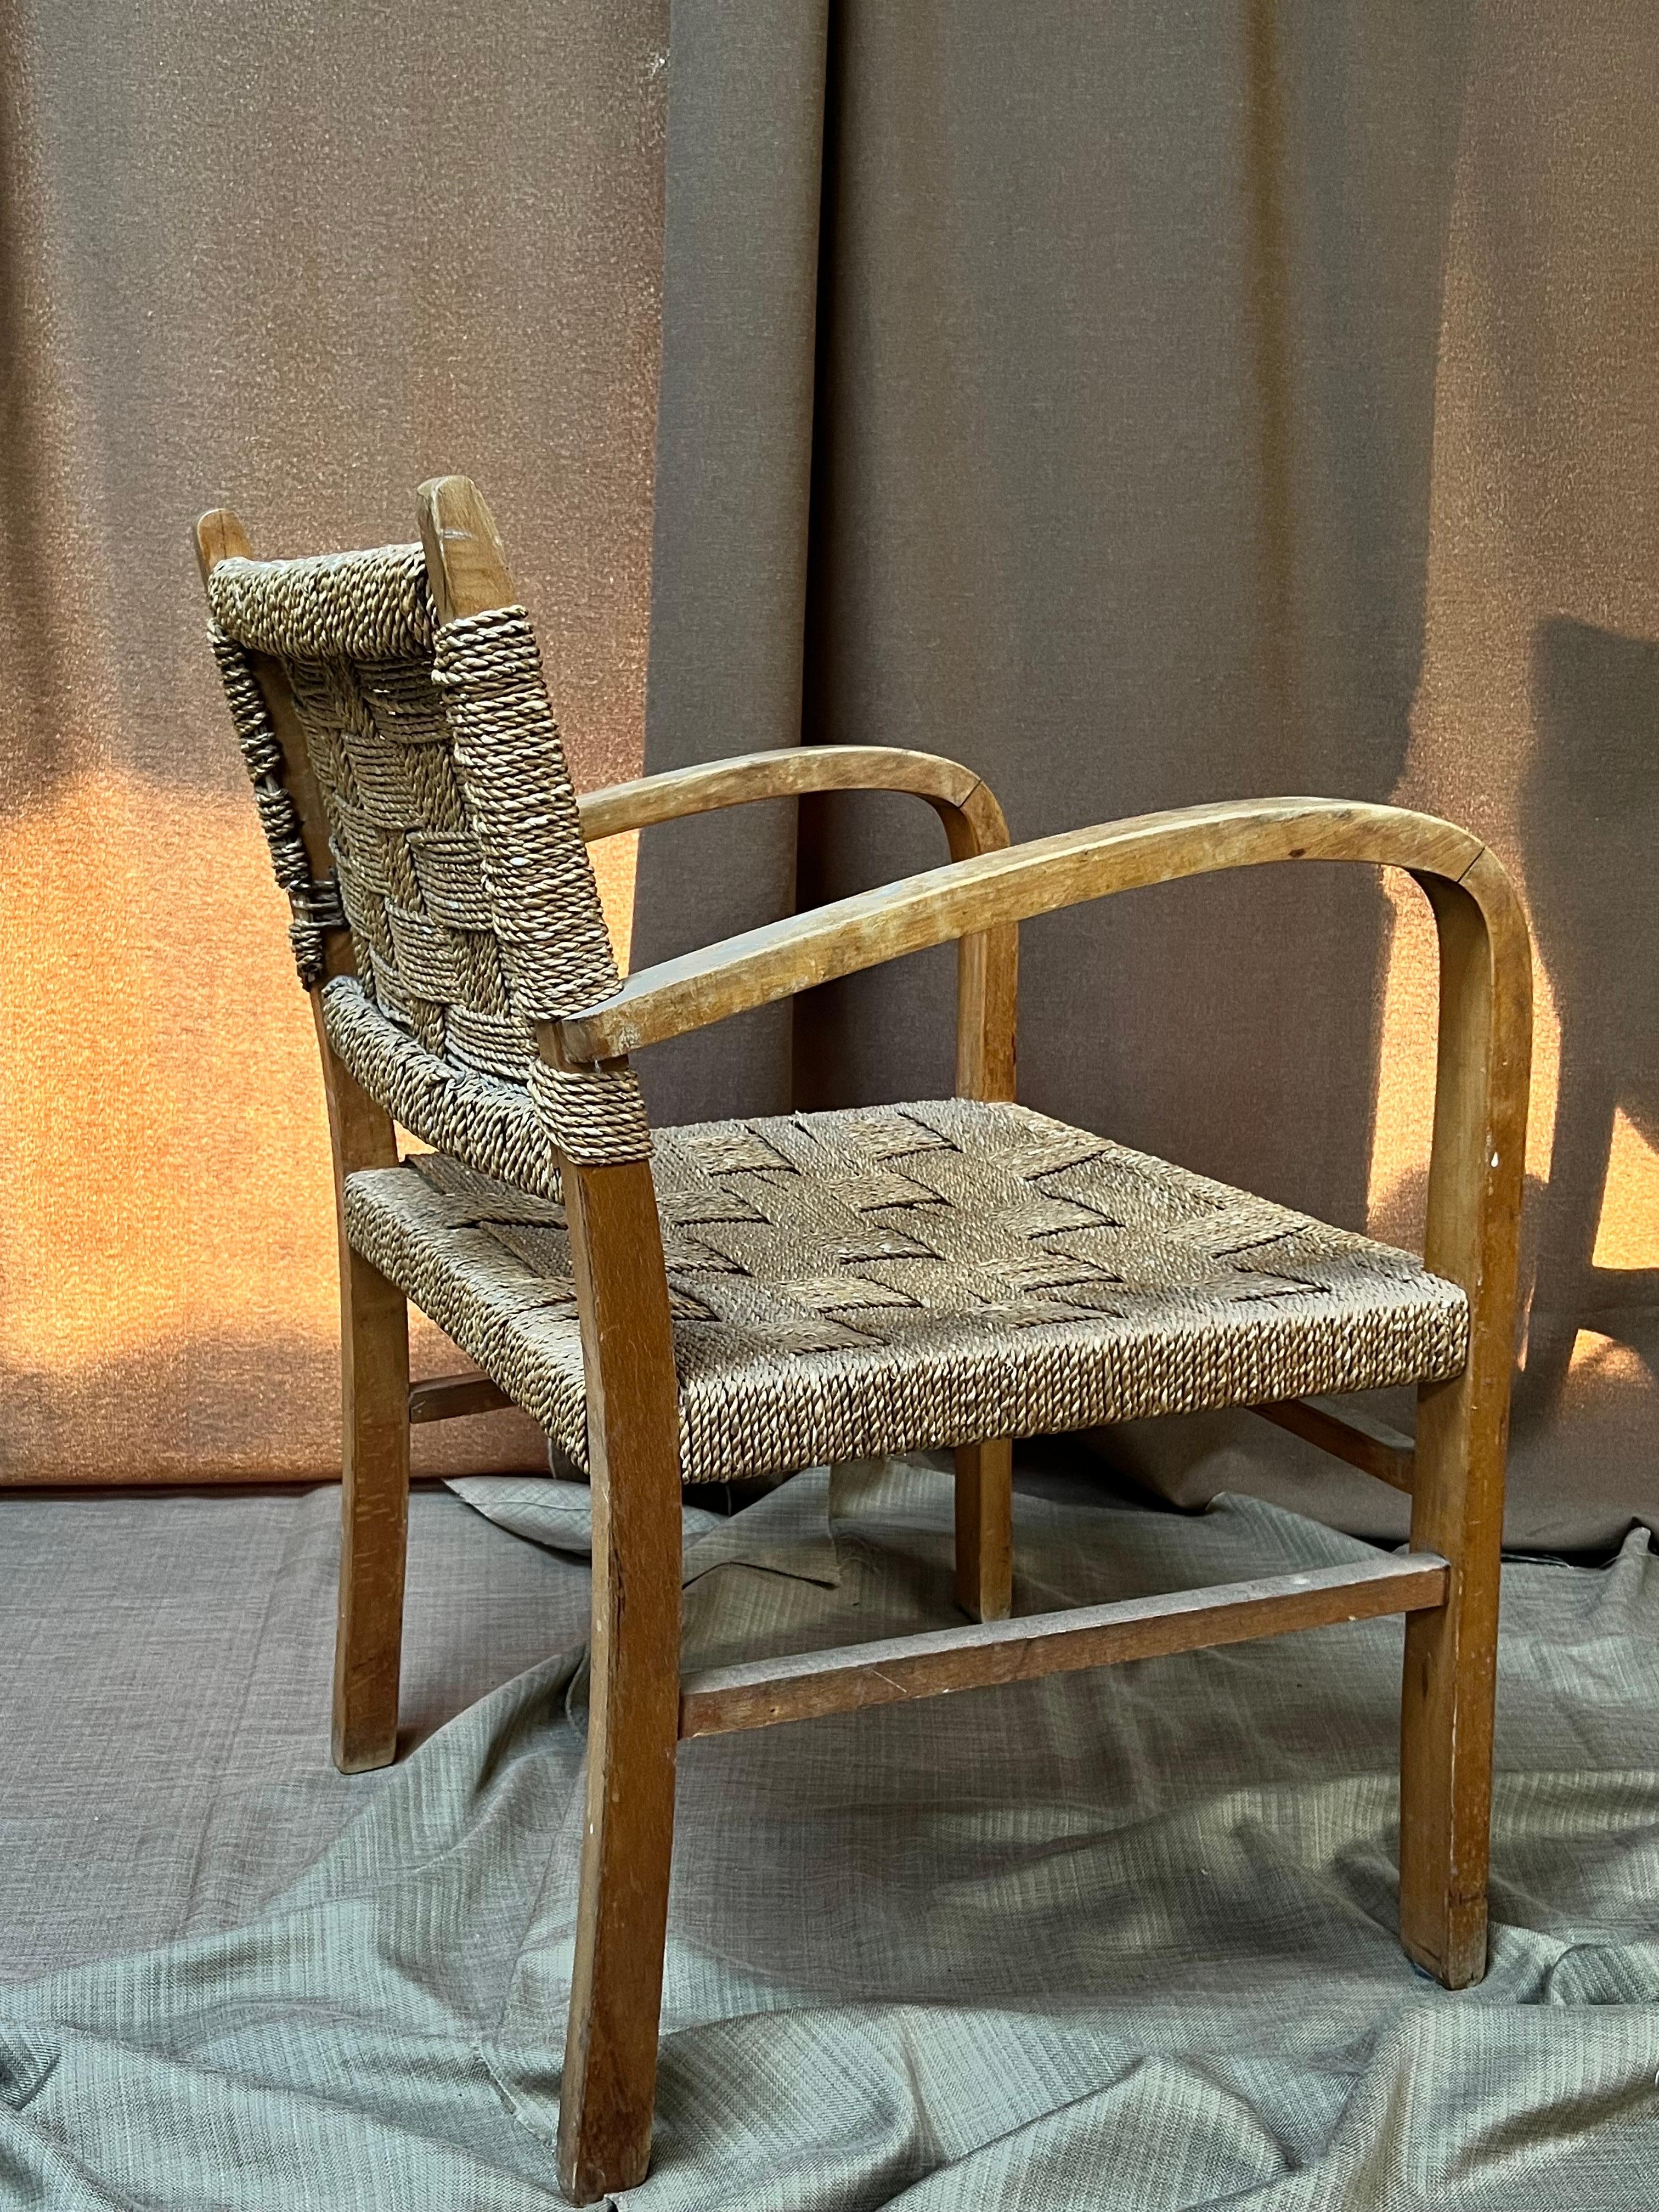 Fauteuil en bois du moderniste Erich Dieckmann. Fabriqué en bois massif courbé et en corde. Elegant et minimaliste avec une excellente combinaison de matériaux. Léger, facile à déplacer. Le siège et le dossier sont souples et flexibles. Les